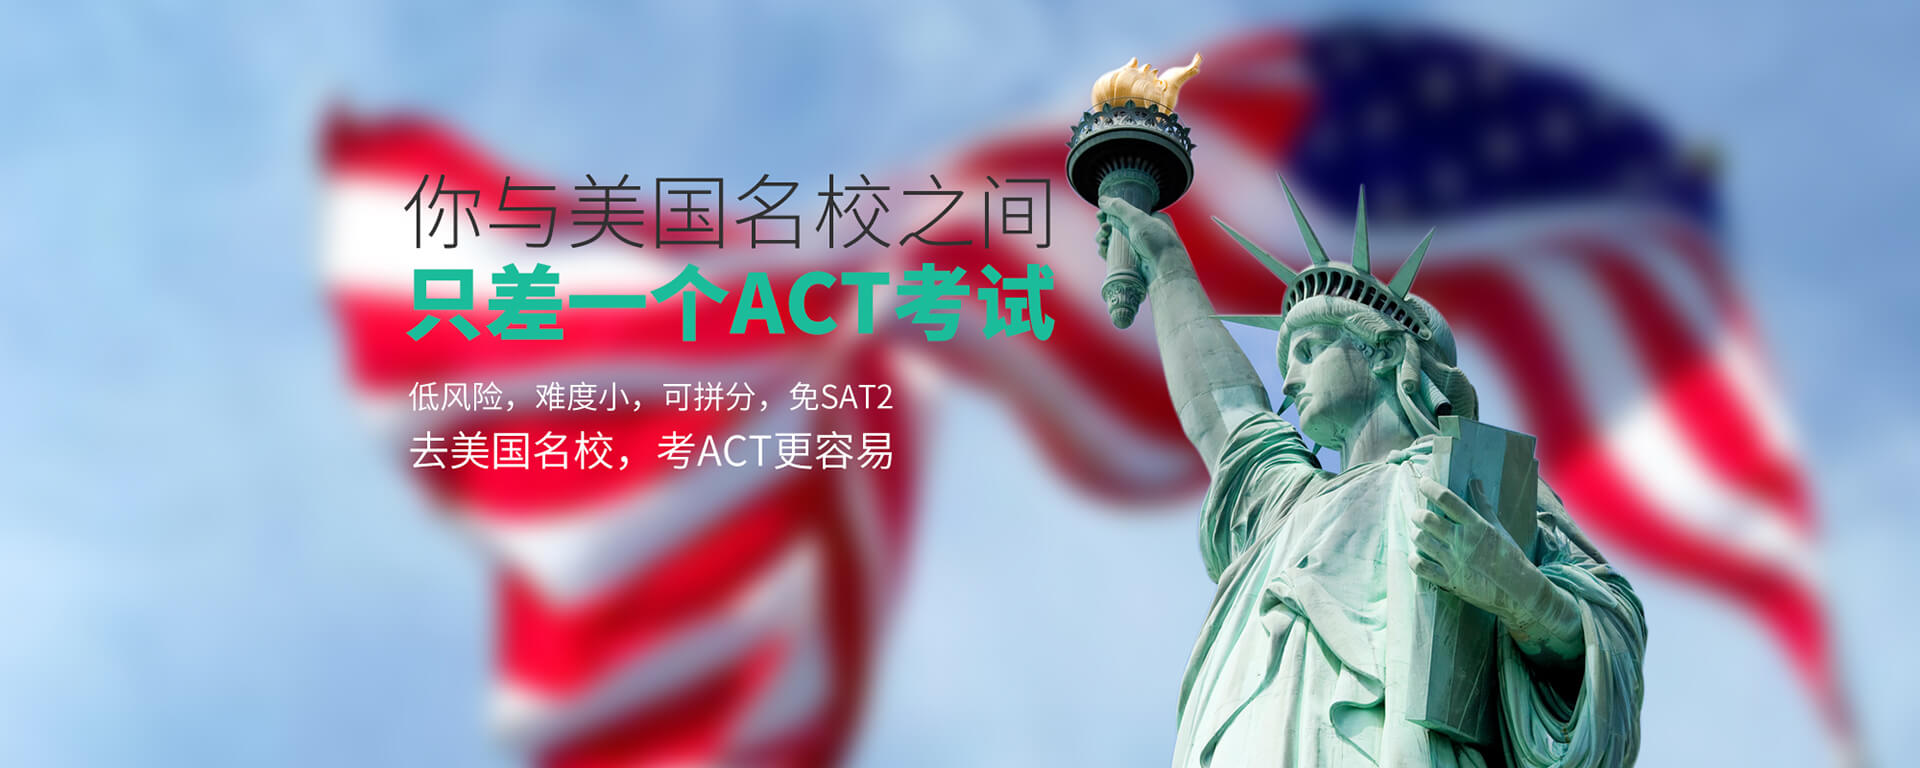 广州美联ACT英语课程